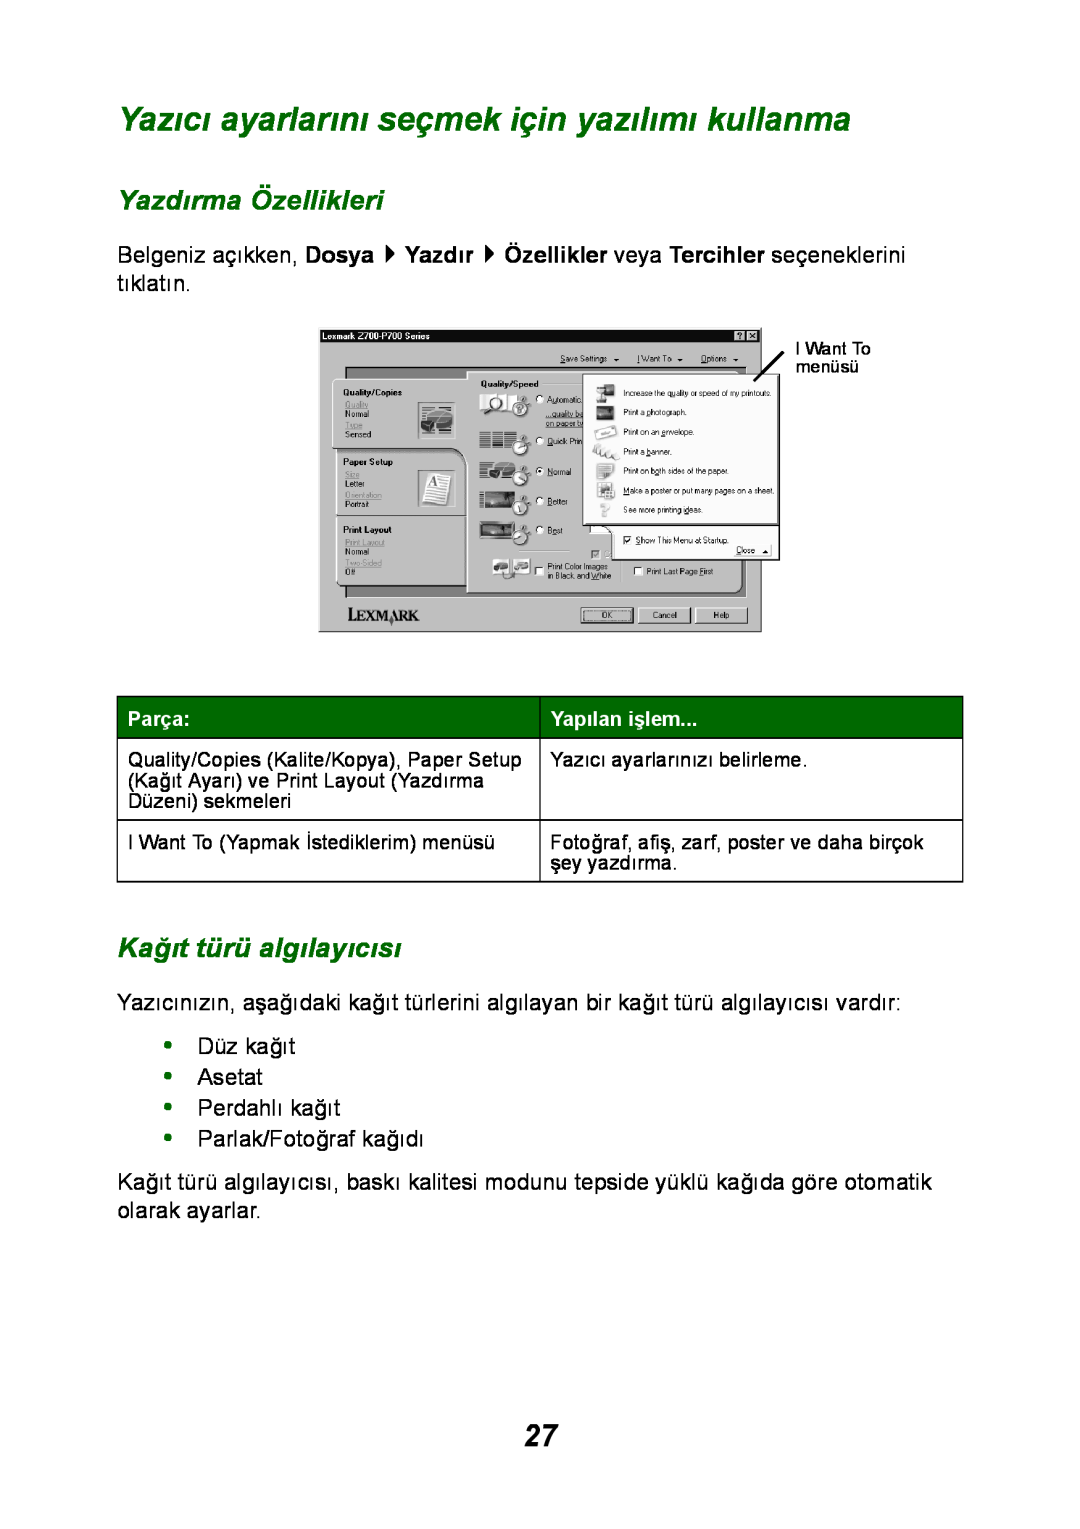 Lexmark P700 manual Yazıcı ayarlarını seçmek için yazılımı kullanma, Yazdırma Özellikleri, Kağıt türü algılayıcısı 